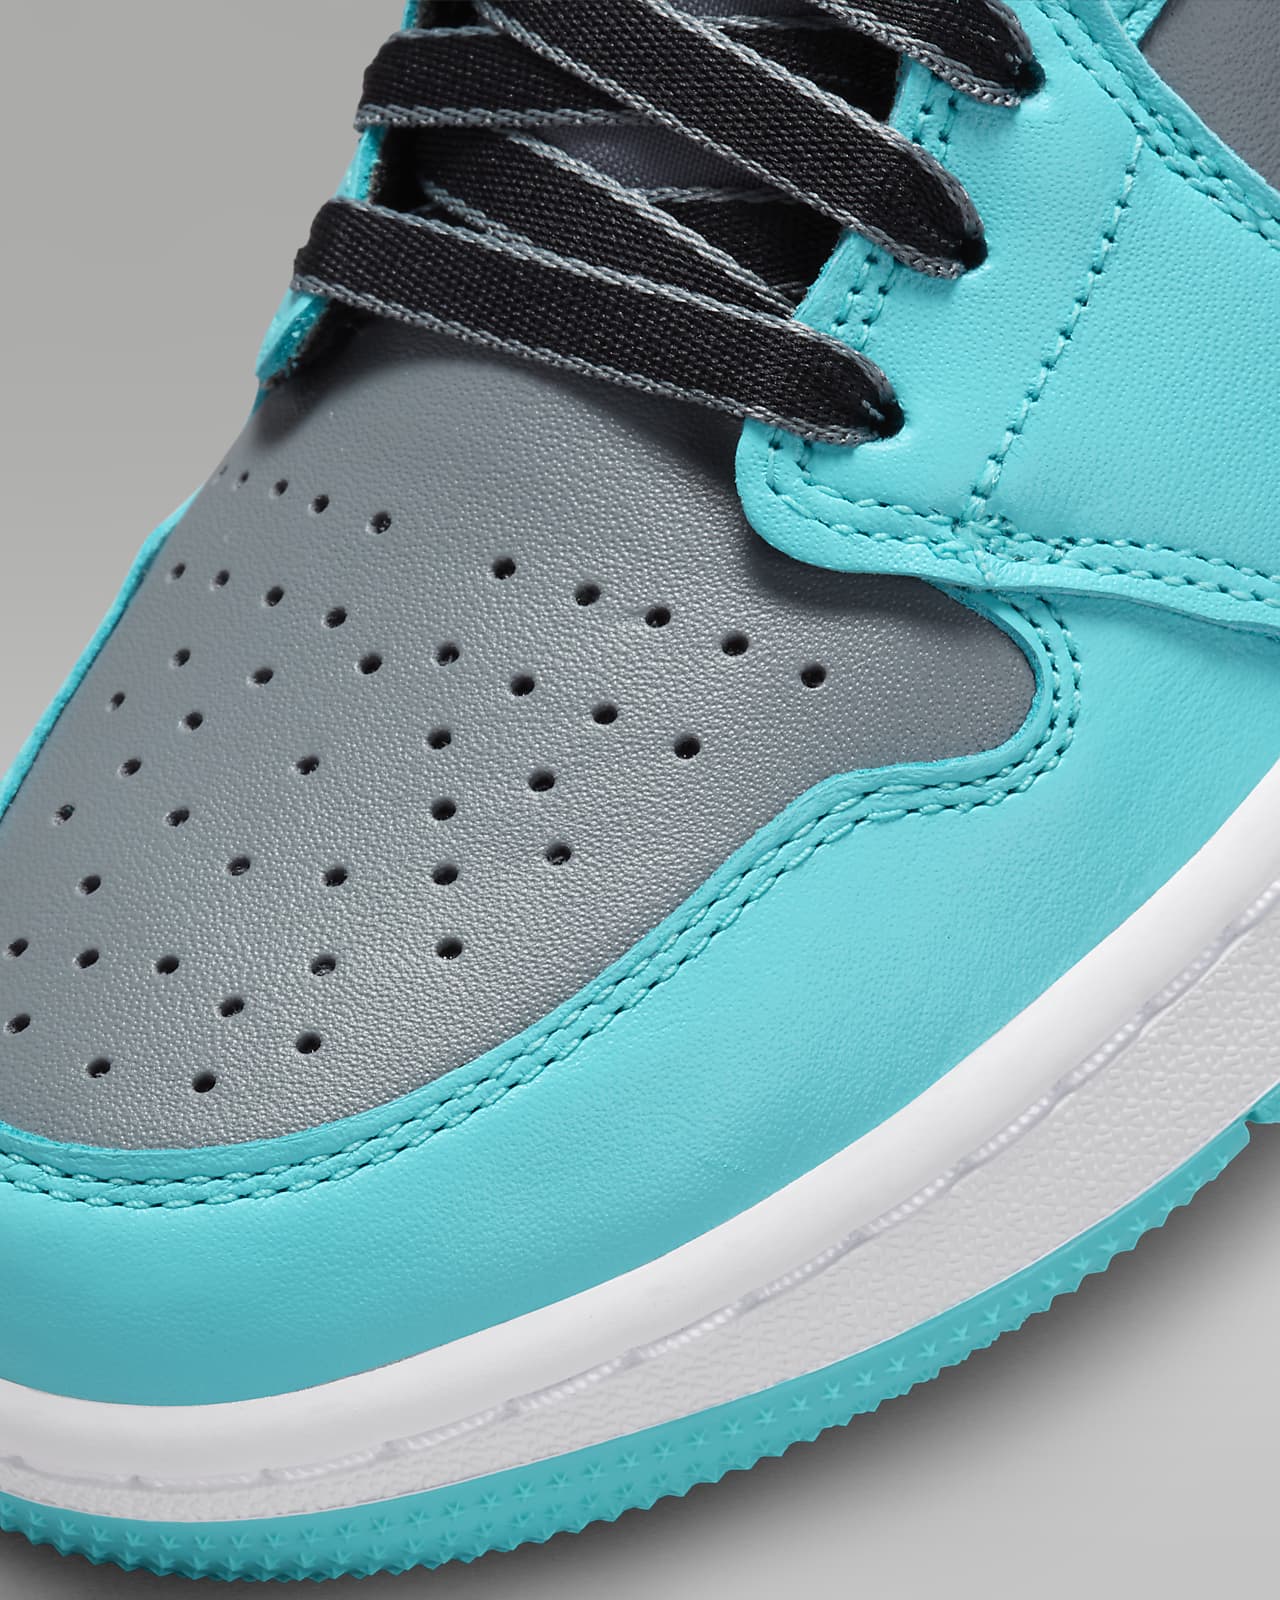 Air Jordan 1 Low G Men's Golf Shoes. Nike.com